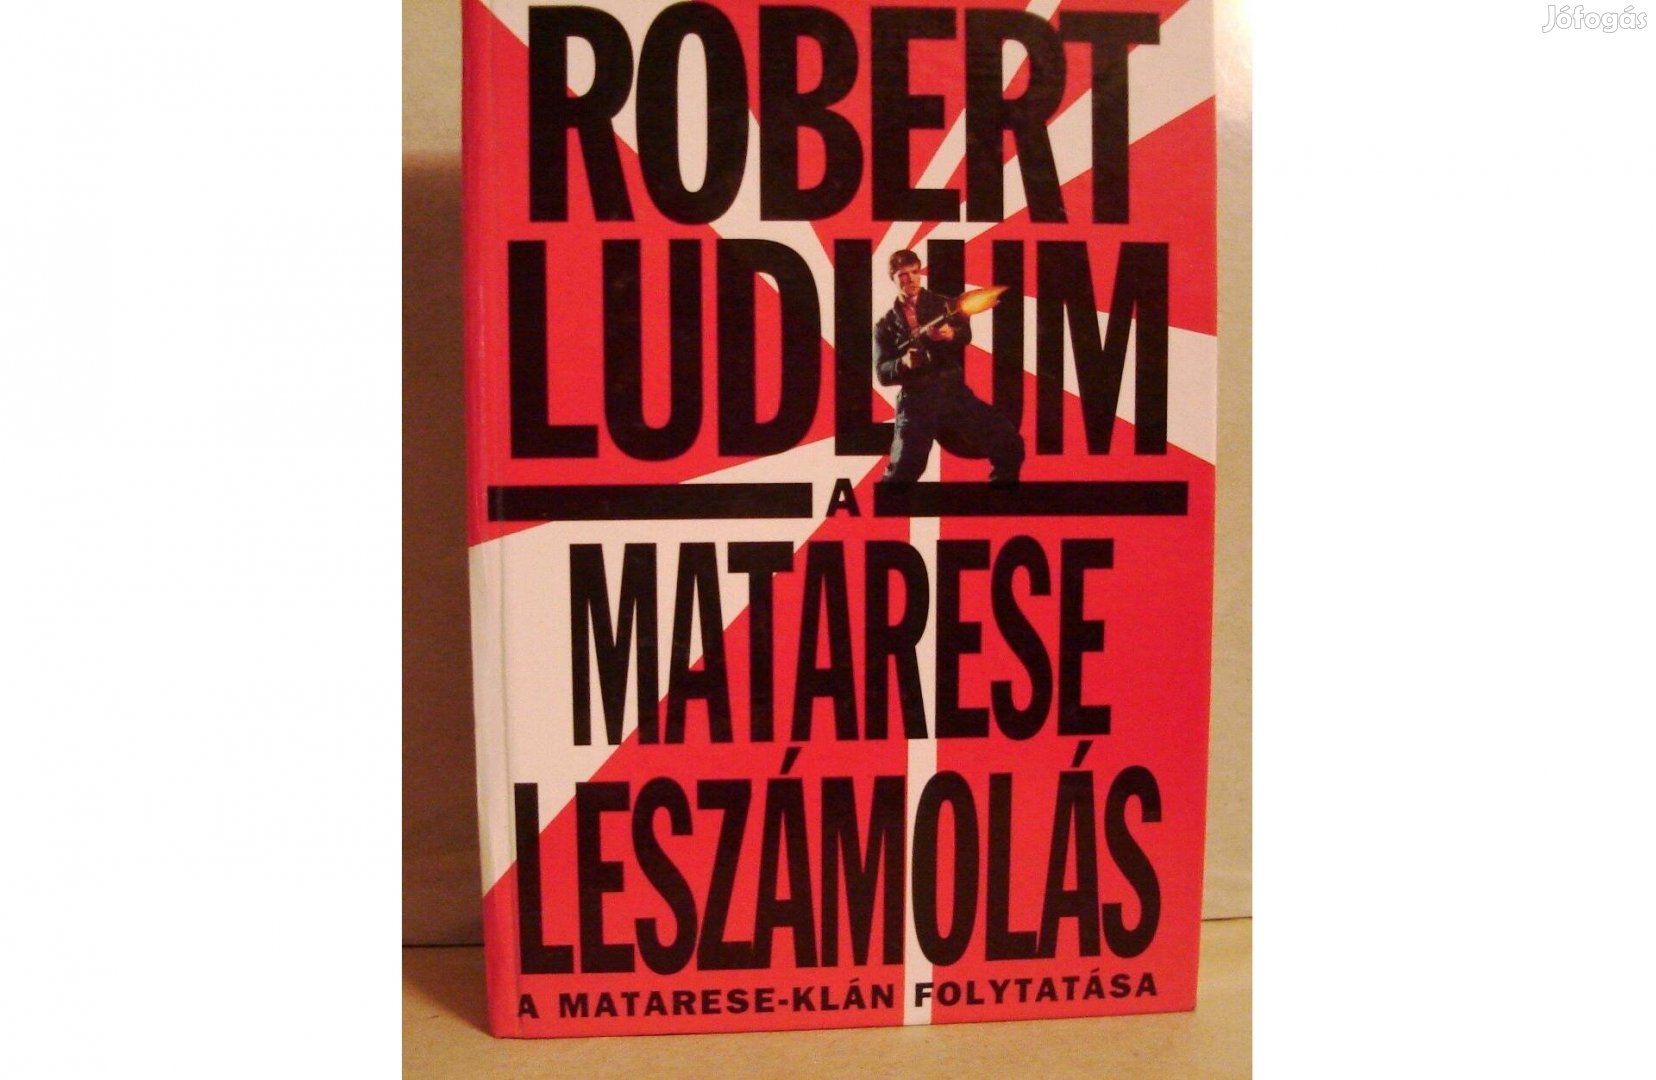 Robert Ludlum: A Matarese leszámolás